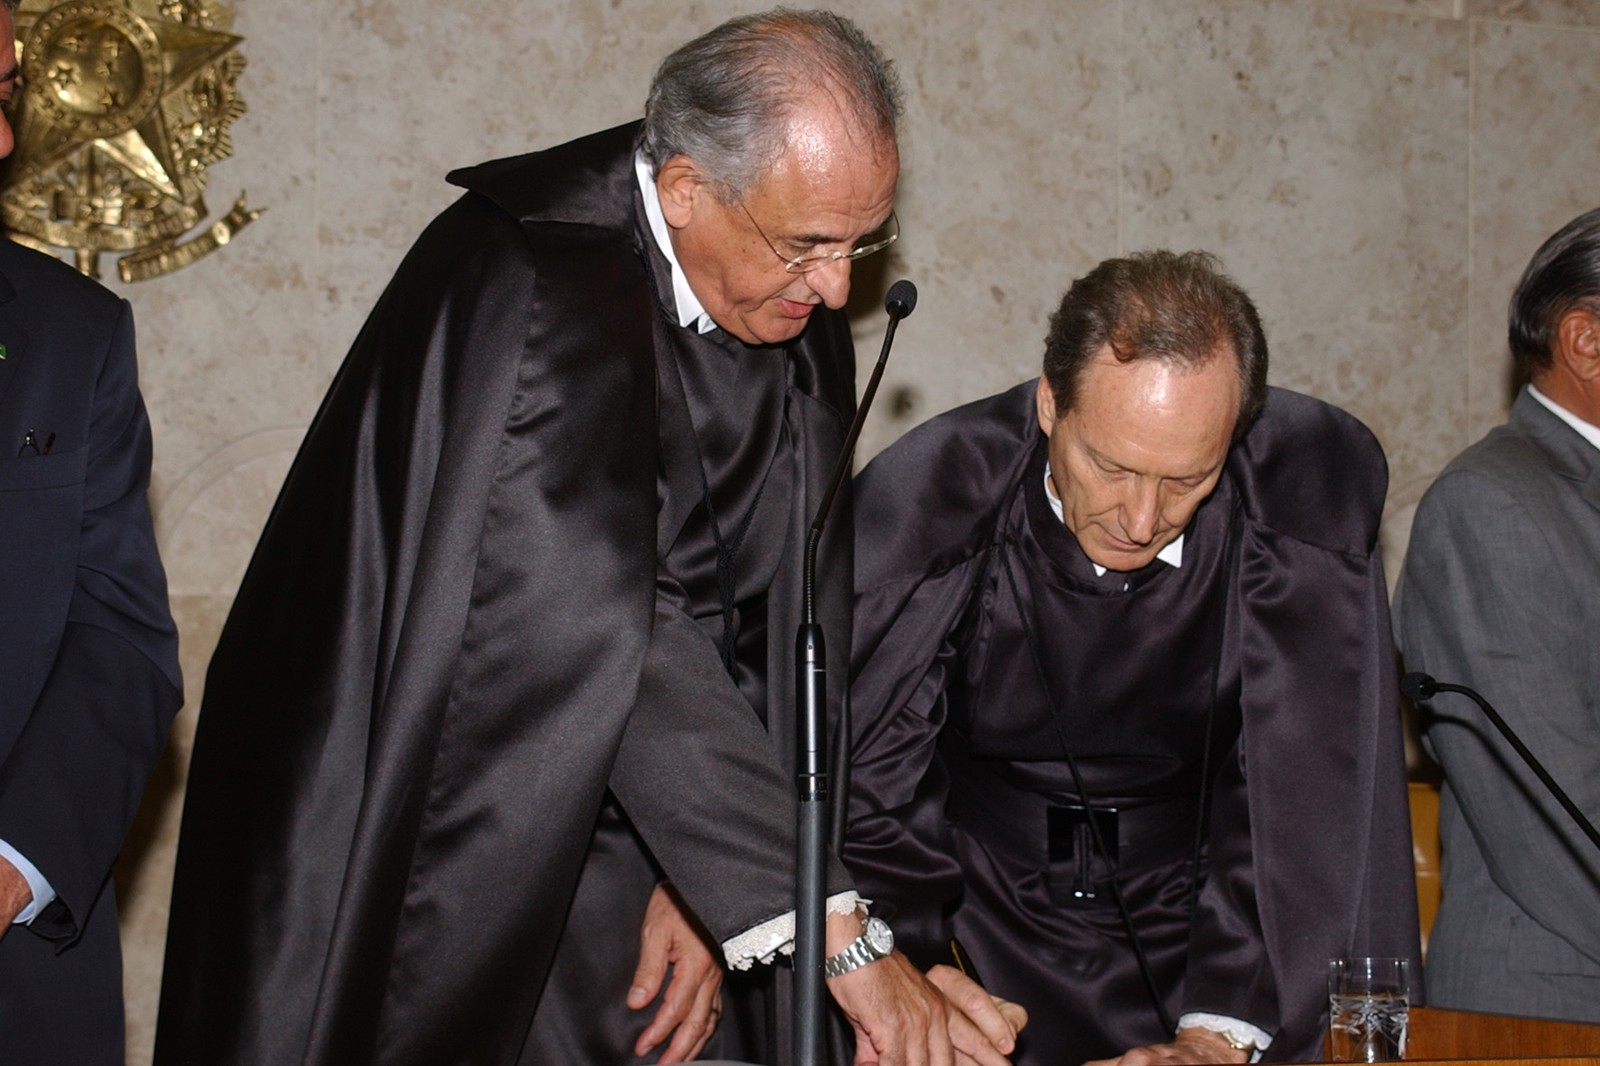 Lewandowski tomou posse na Corte em 2006, na vaga de Carlos Velloso. Antes, atuava como Desembargador do Tribunal de Justiça paulista, de 1997 até assumir no STF  — Foto: Divulgação/STF